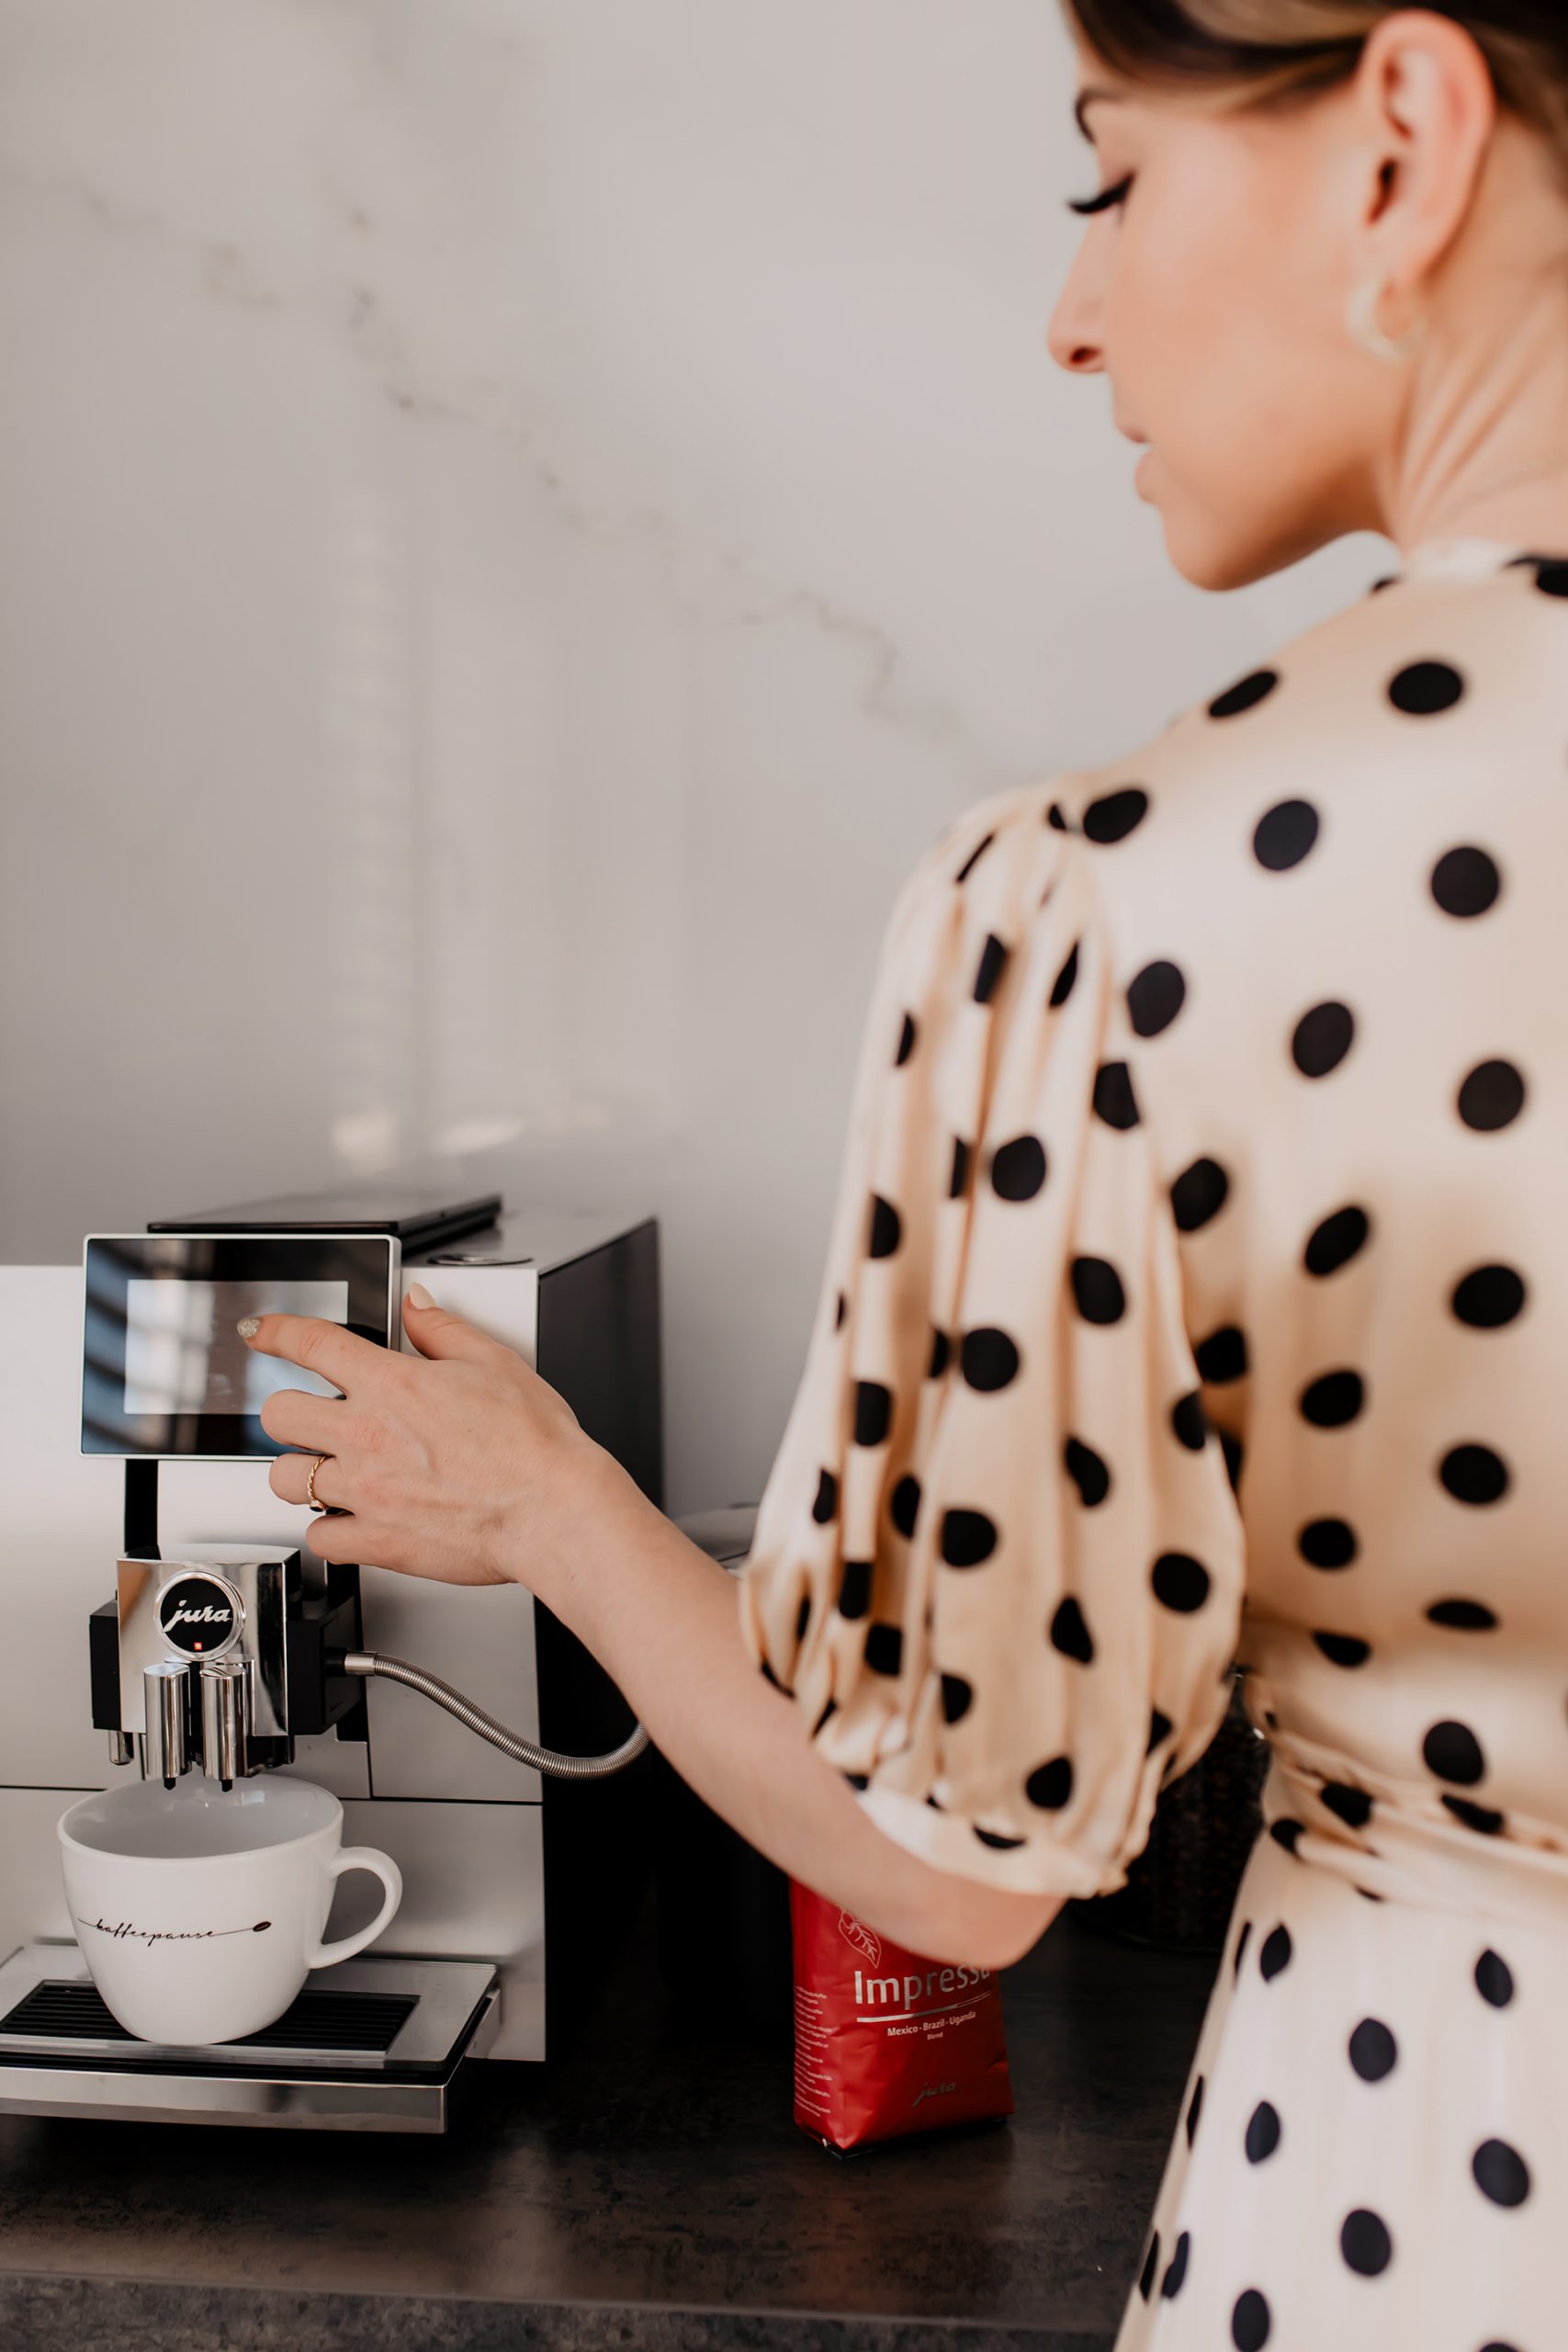 Produktplatzierung. Am Karriere Blog teile ich heute 4 Gründe für eine entspannte Kaffeepause im Büro und 4 Tipps für richtig guten Kaffee mit dir! www.whoismocca.com #kaffeepause #kaffeeliebe #jura #karrieretipps